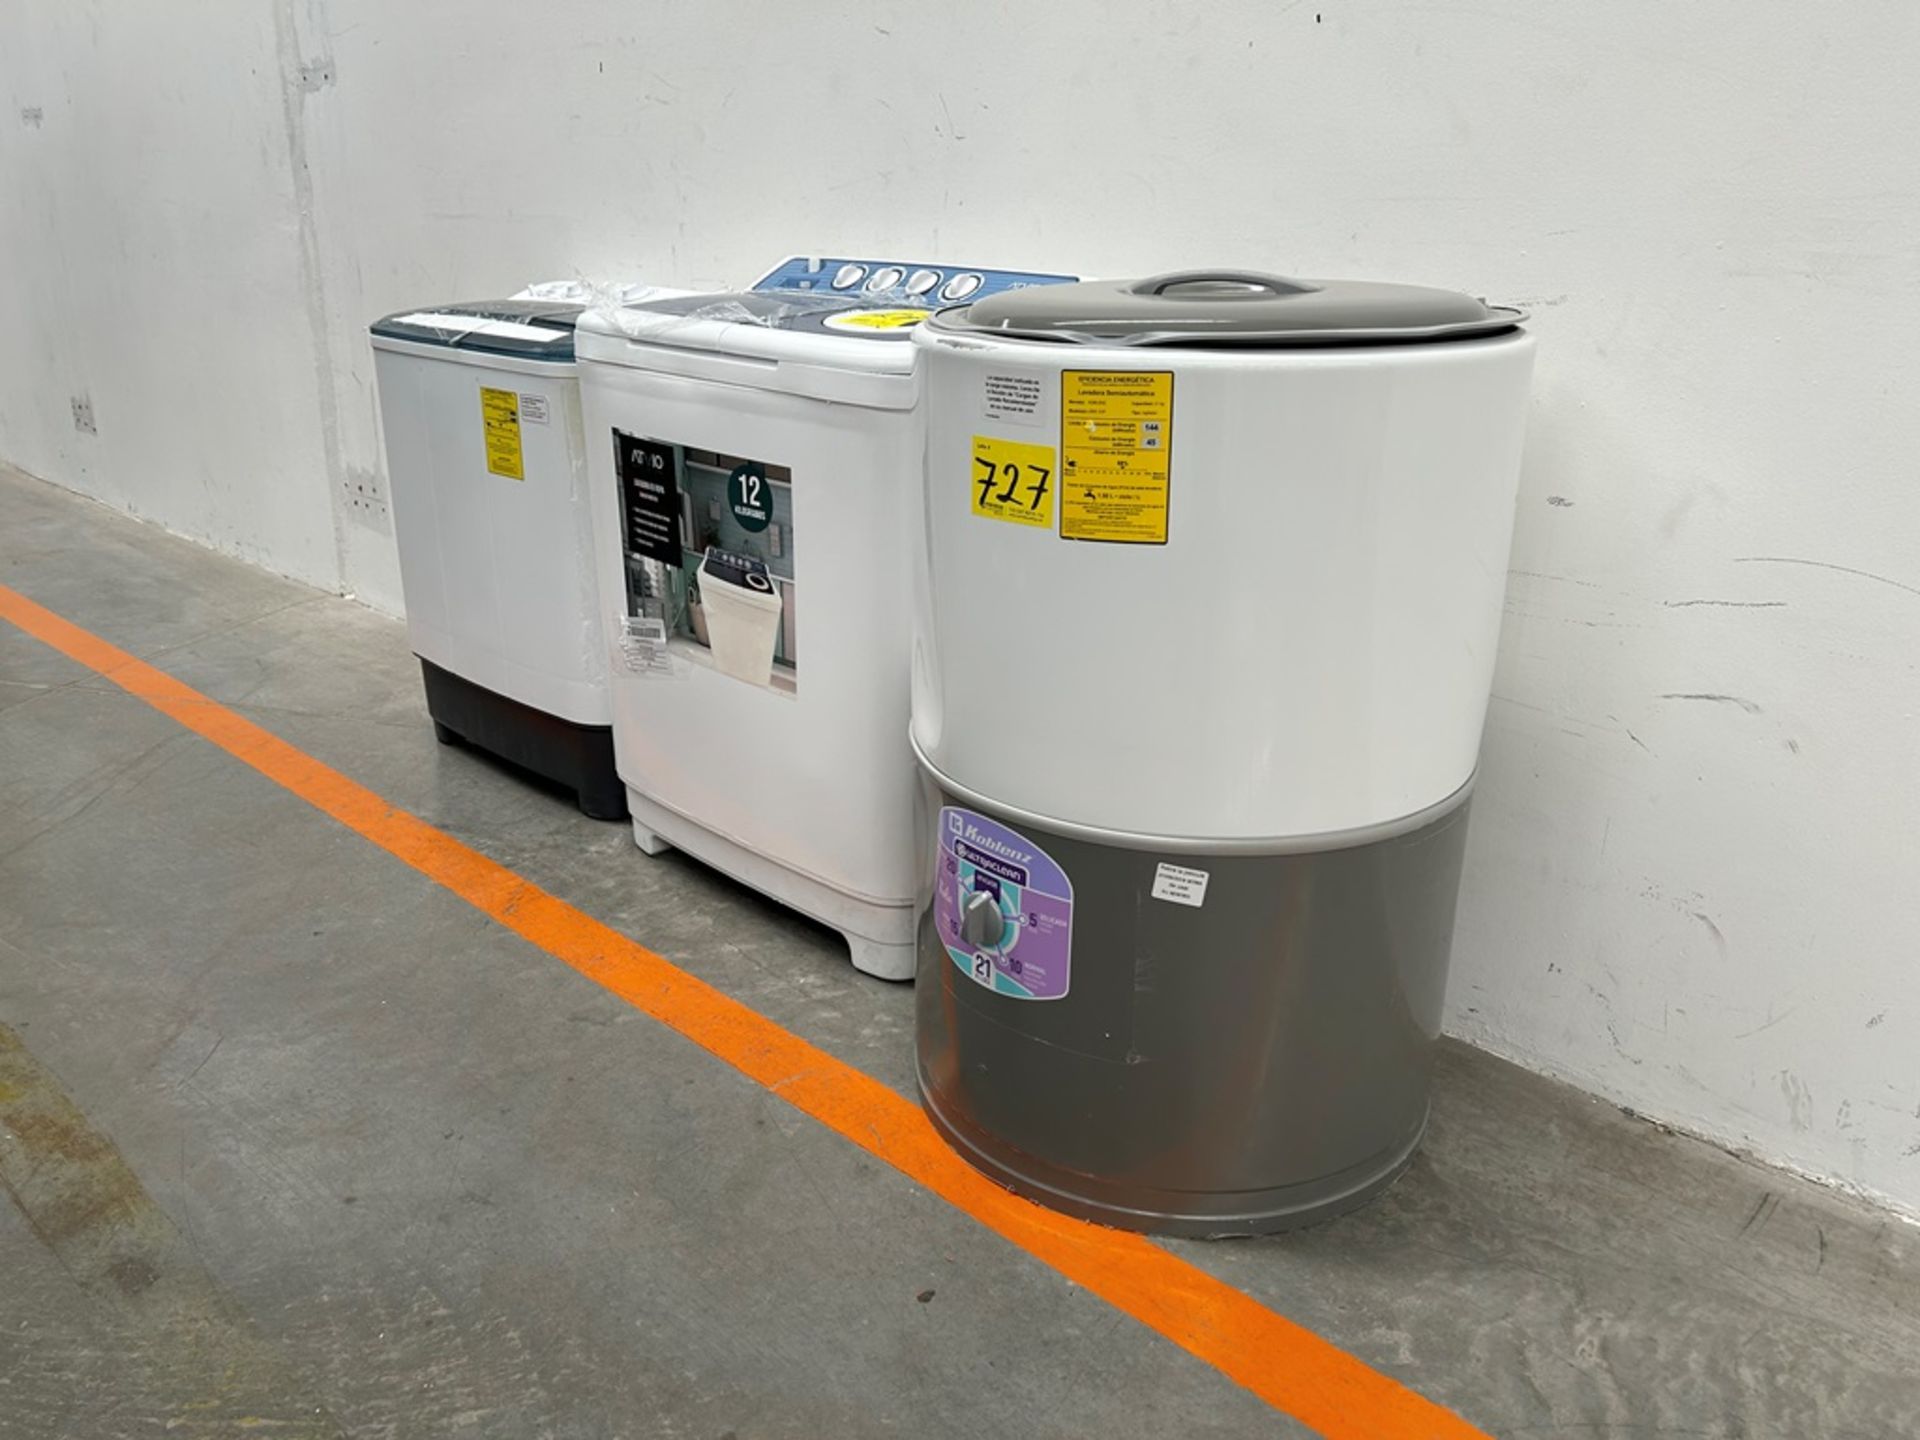 Lote de 3 lavadoras contiene: 1 Lavadora de 21 KG, Marca KOBLENZ, Modelo LRKF21P, Serie 31522, Colo - Image 3 of 13